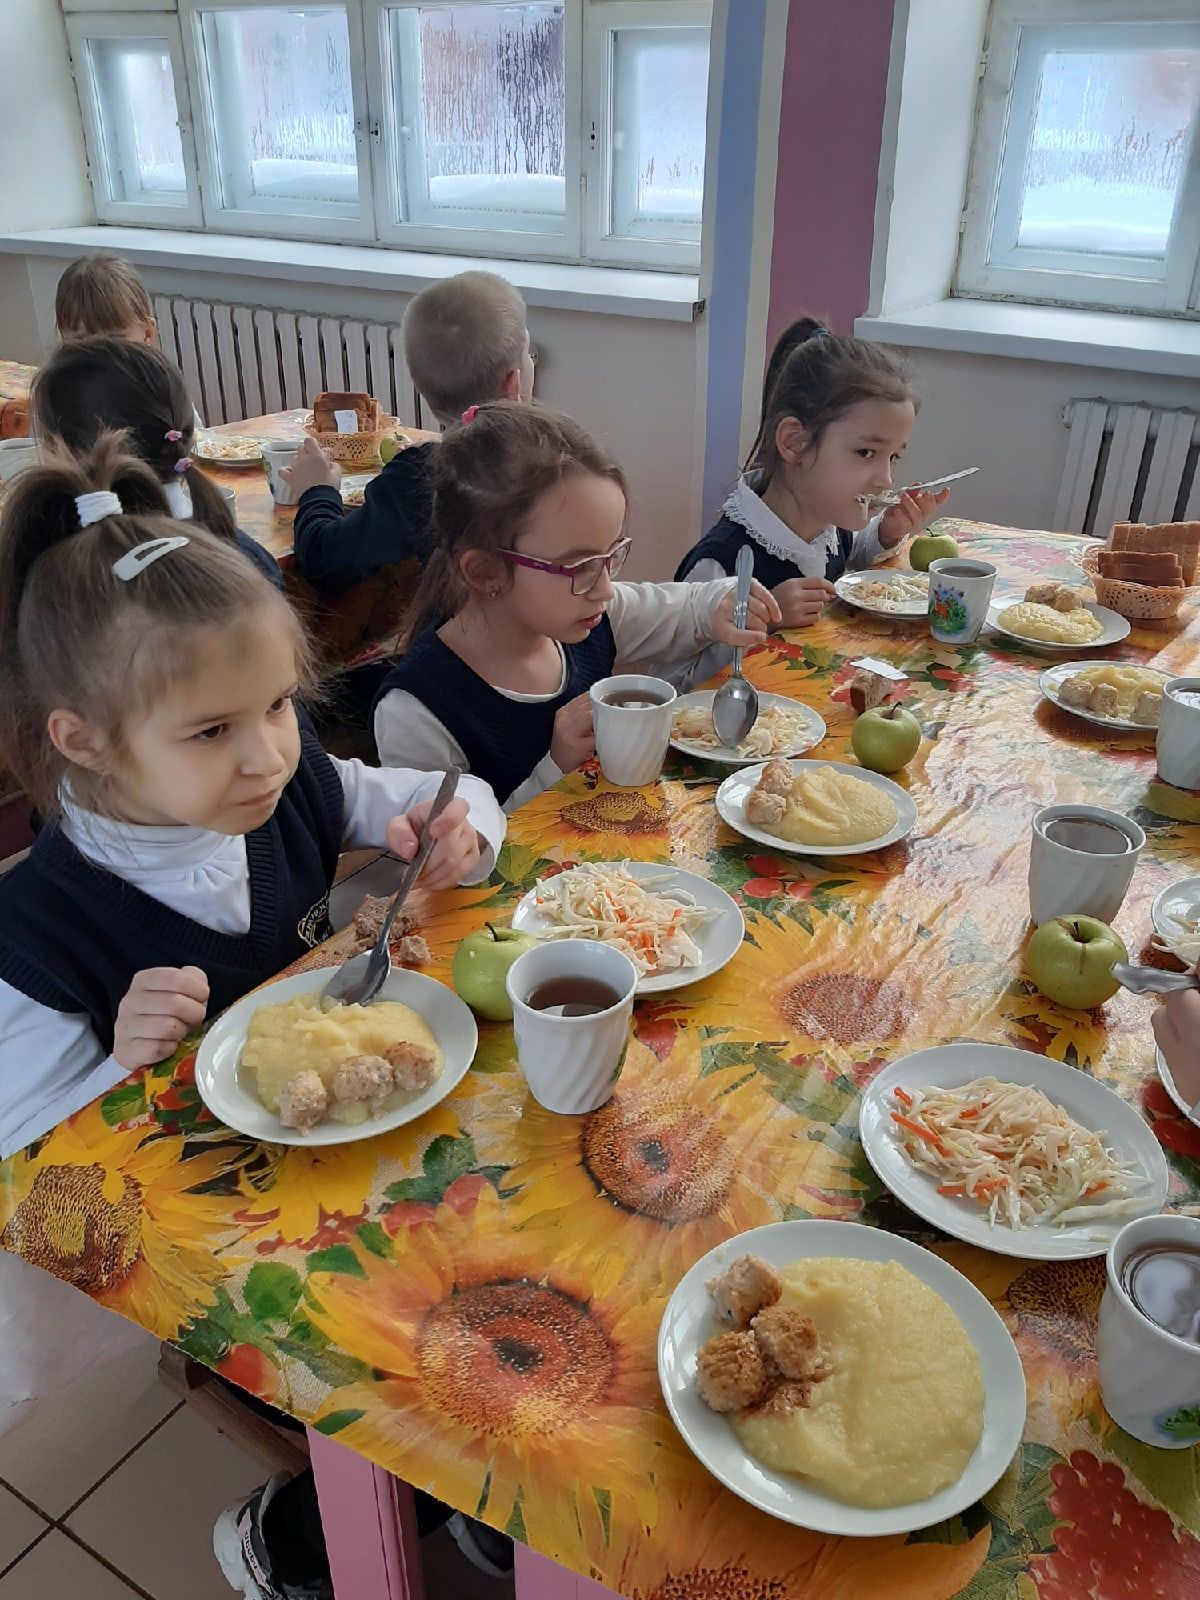 Вилен Касимов: "Правильное питание - залог здоровья наших детей"